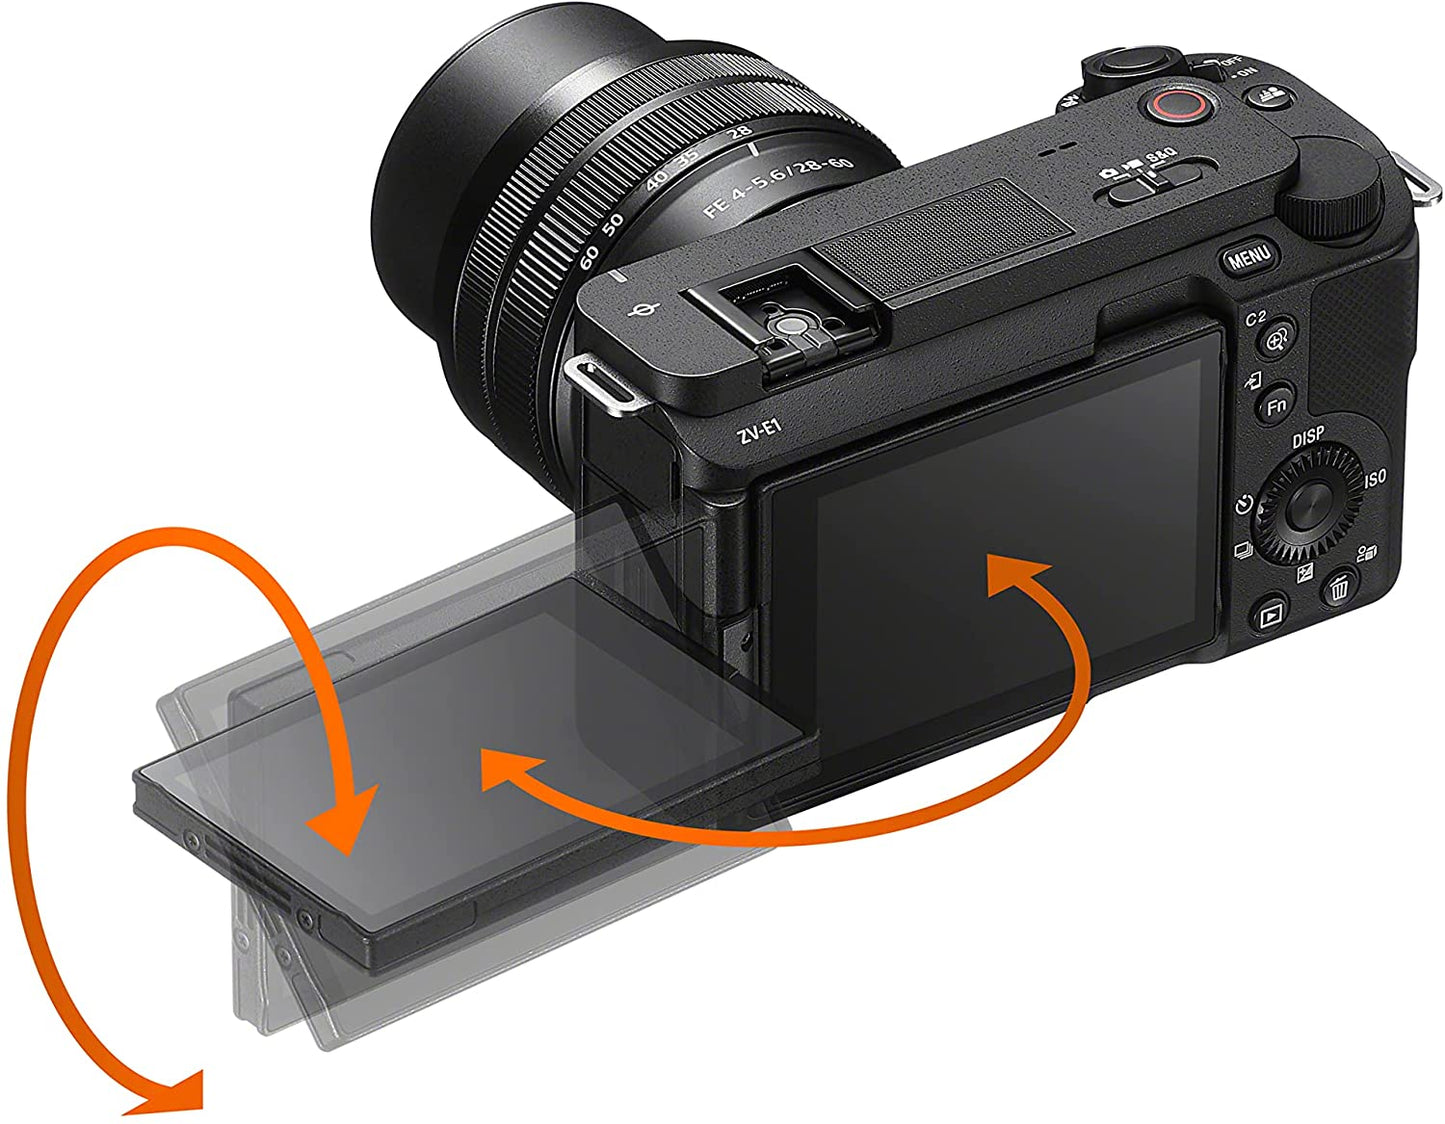 Sony Alpha ZV-E1 Full-Frame Vlog Camera with 28-60mm Lens - Black